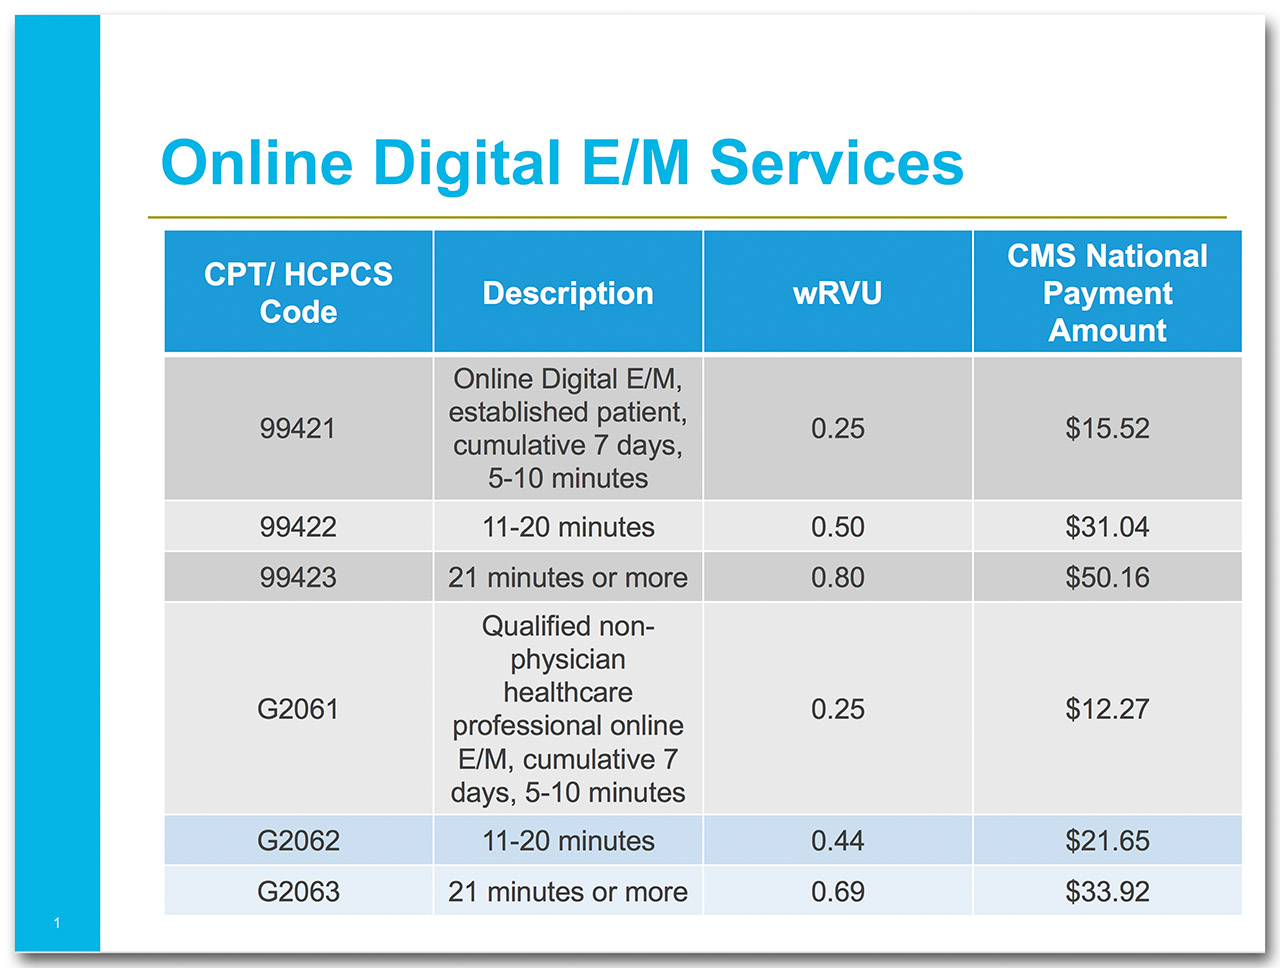 Online Digital E/M Services_1280